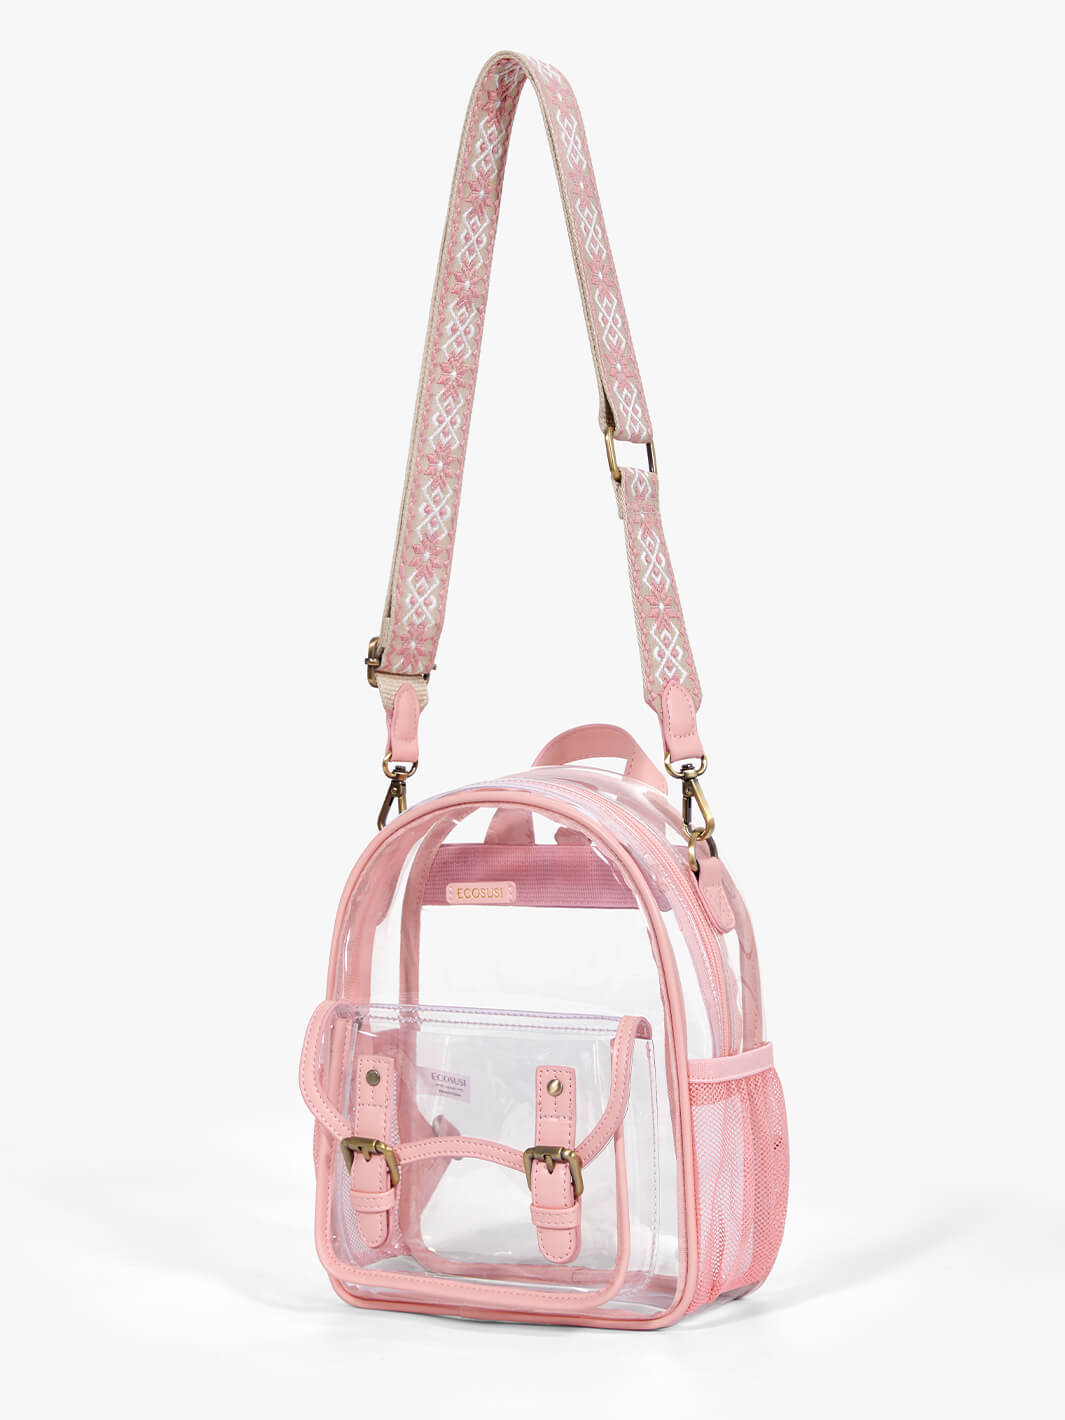 Clear Backpack from Pink with Adjustable shoulder strap - ECOSUSI Shoulder Bag